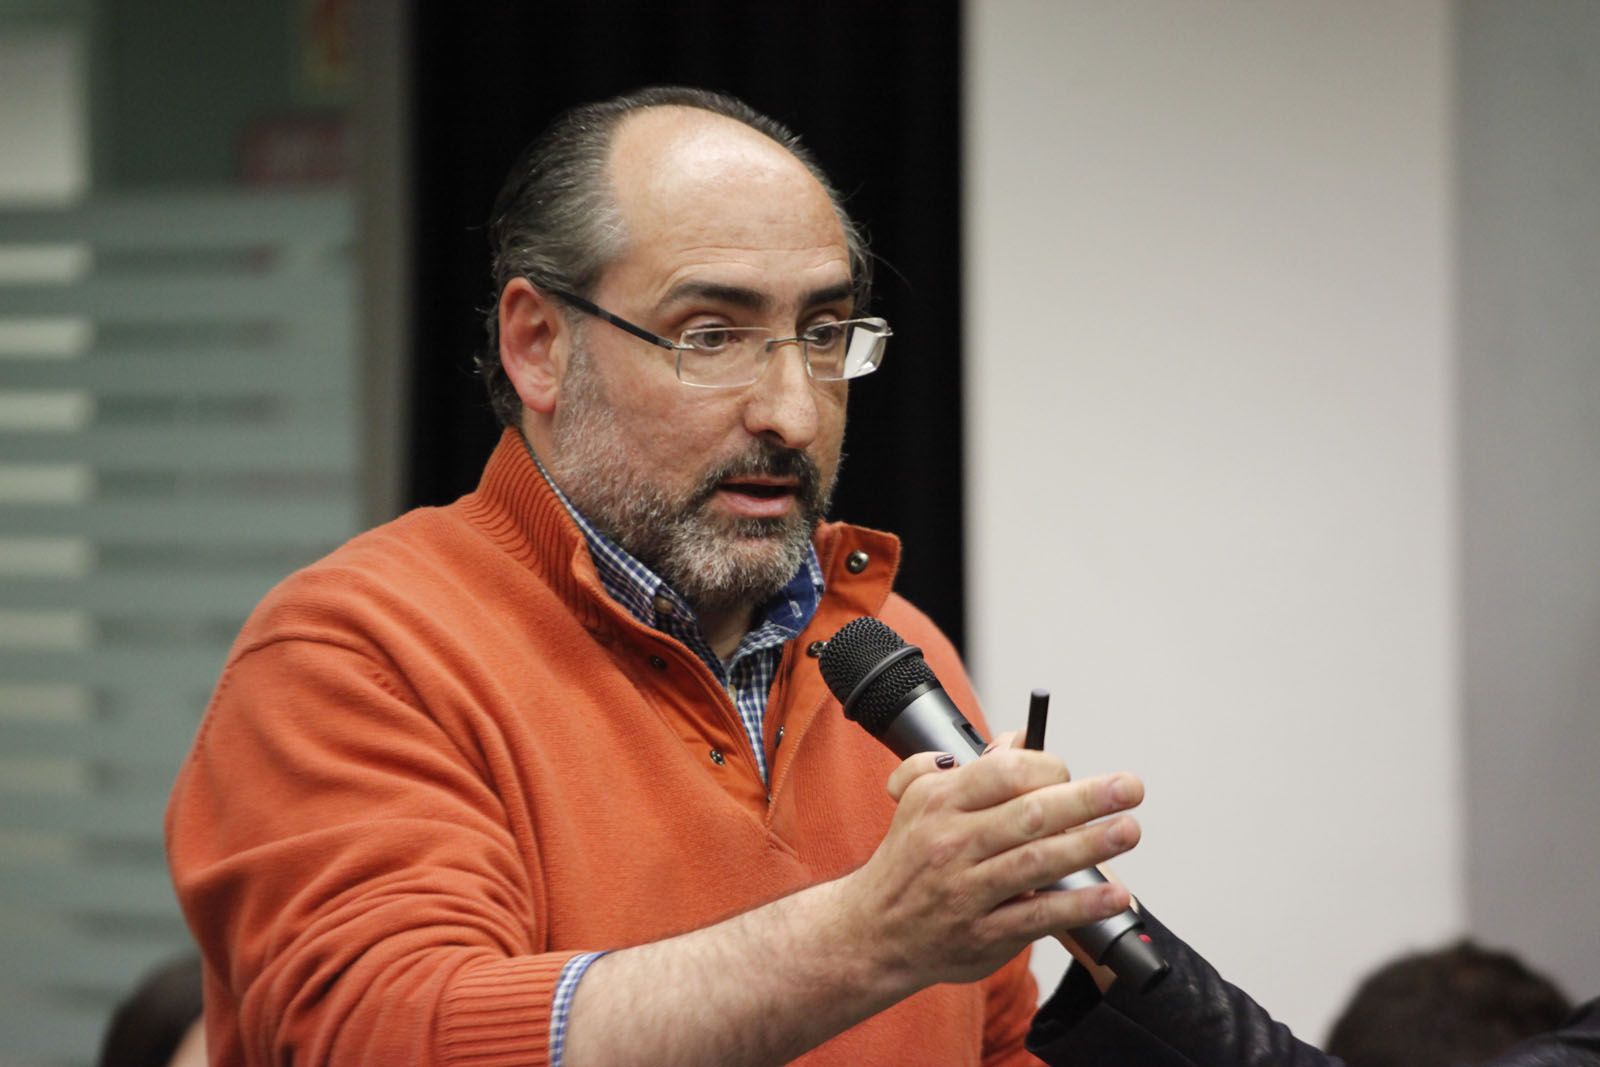 Josep Manuel Prats, president de la Fapel ( Federació d'associacions de pares i mares d'escoles lliures de Catalunya)